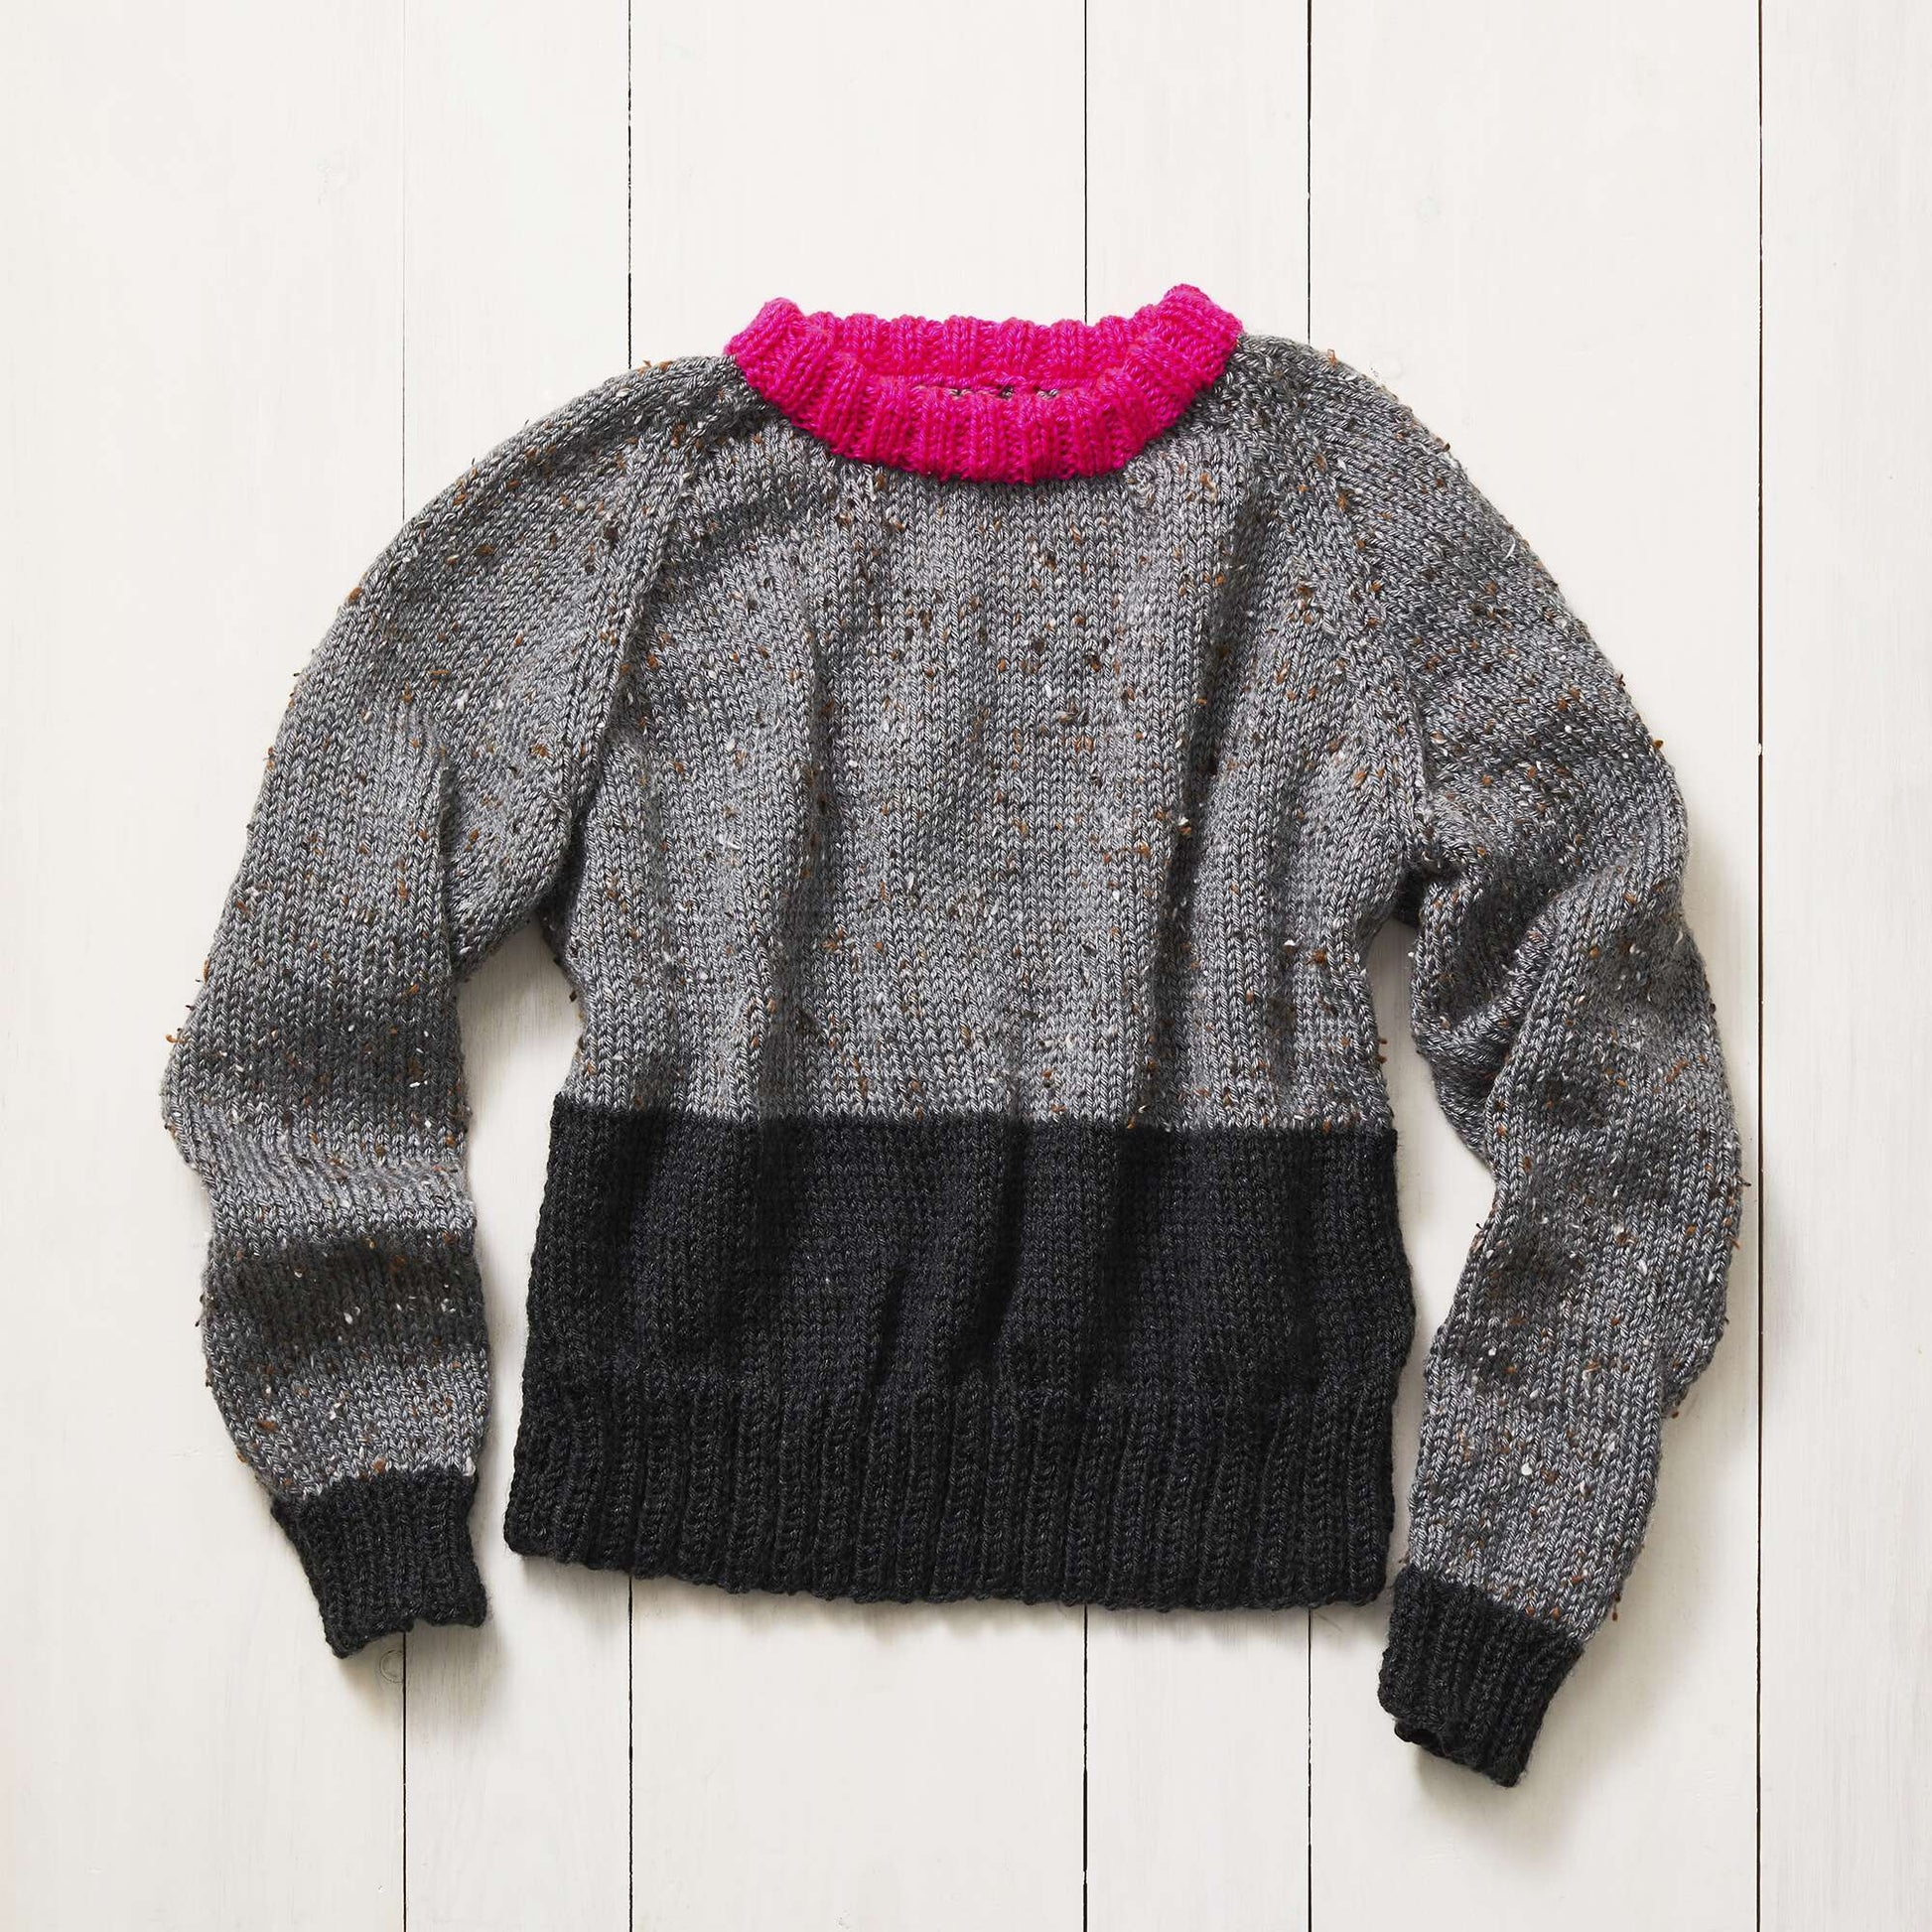 Free Stitch Club Raglan Color Block Knit Sweater + Tutorial Pattern